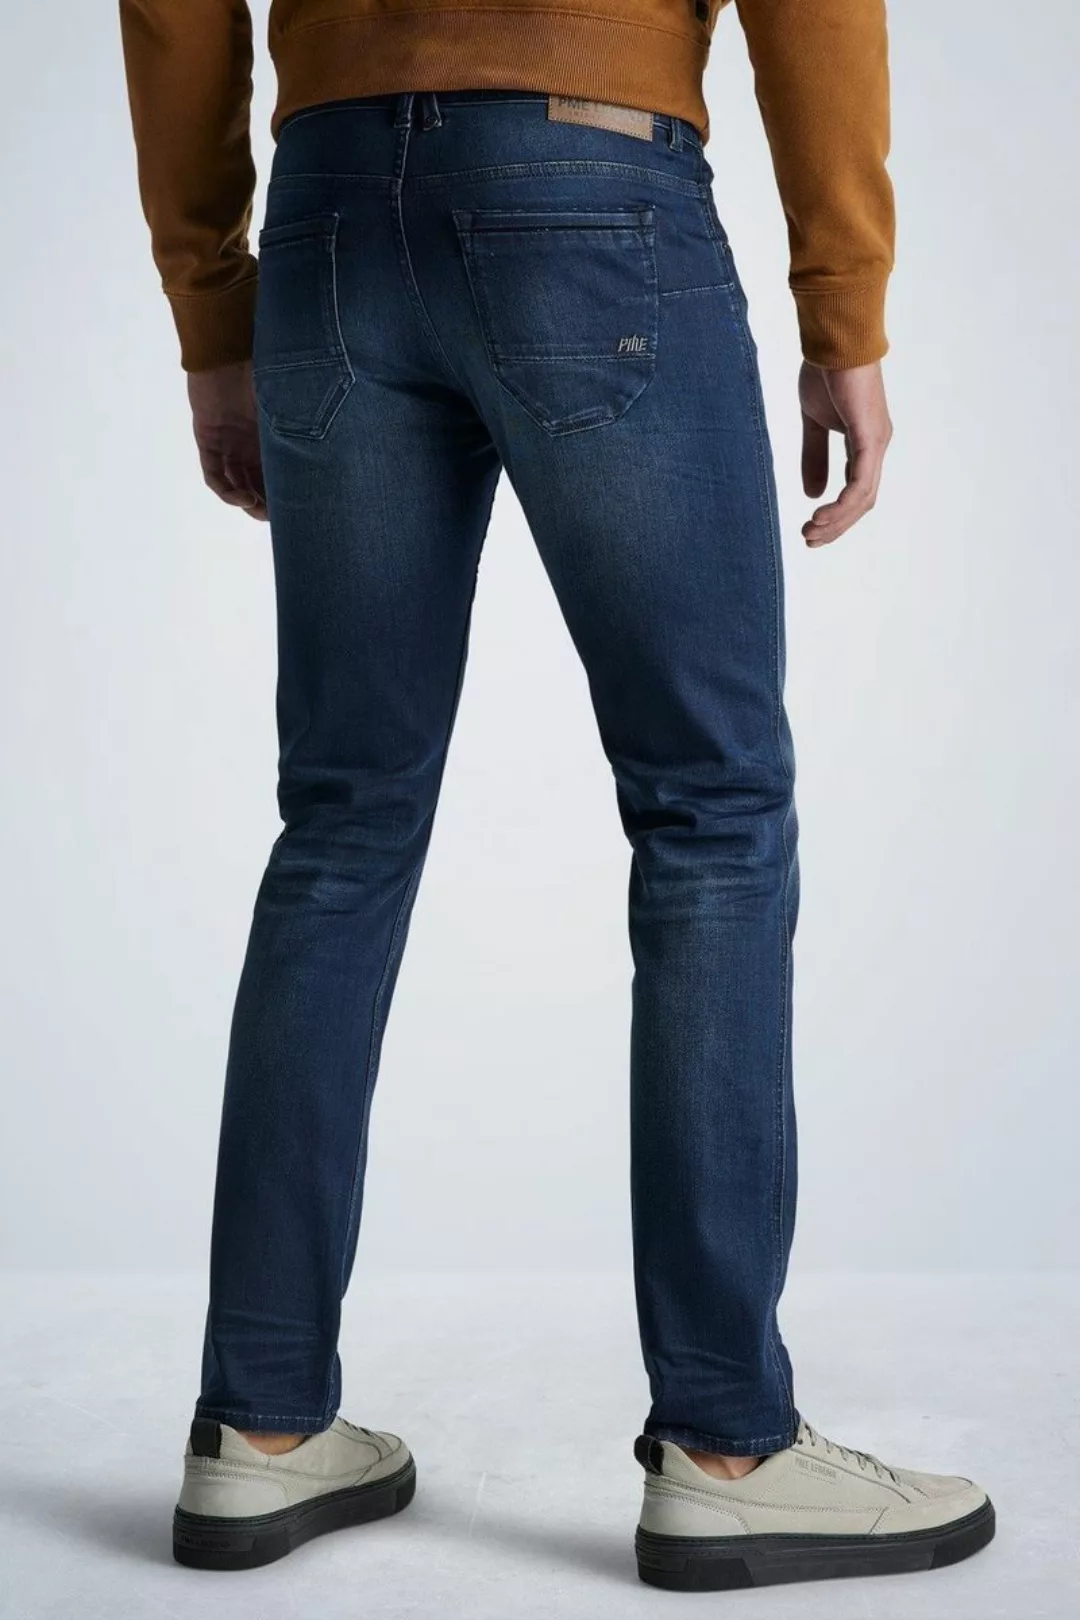 PME Legend Nightflight Jeans Dunkelblau NBW - Größe W 33 - L 32 günstig online kaufen